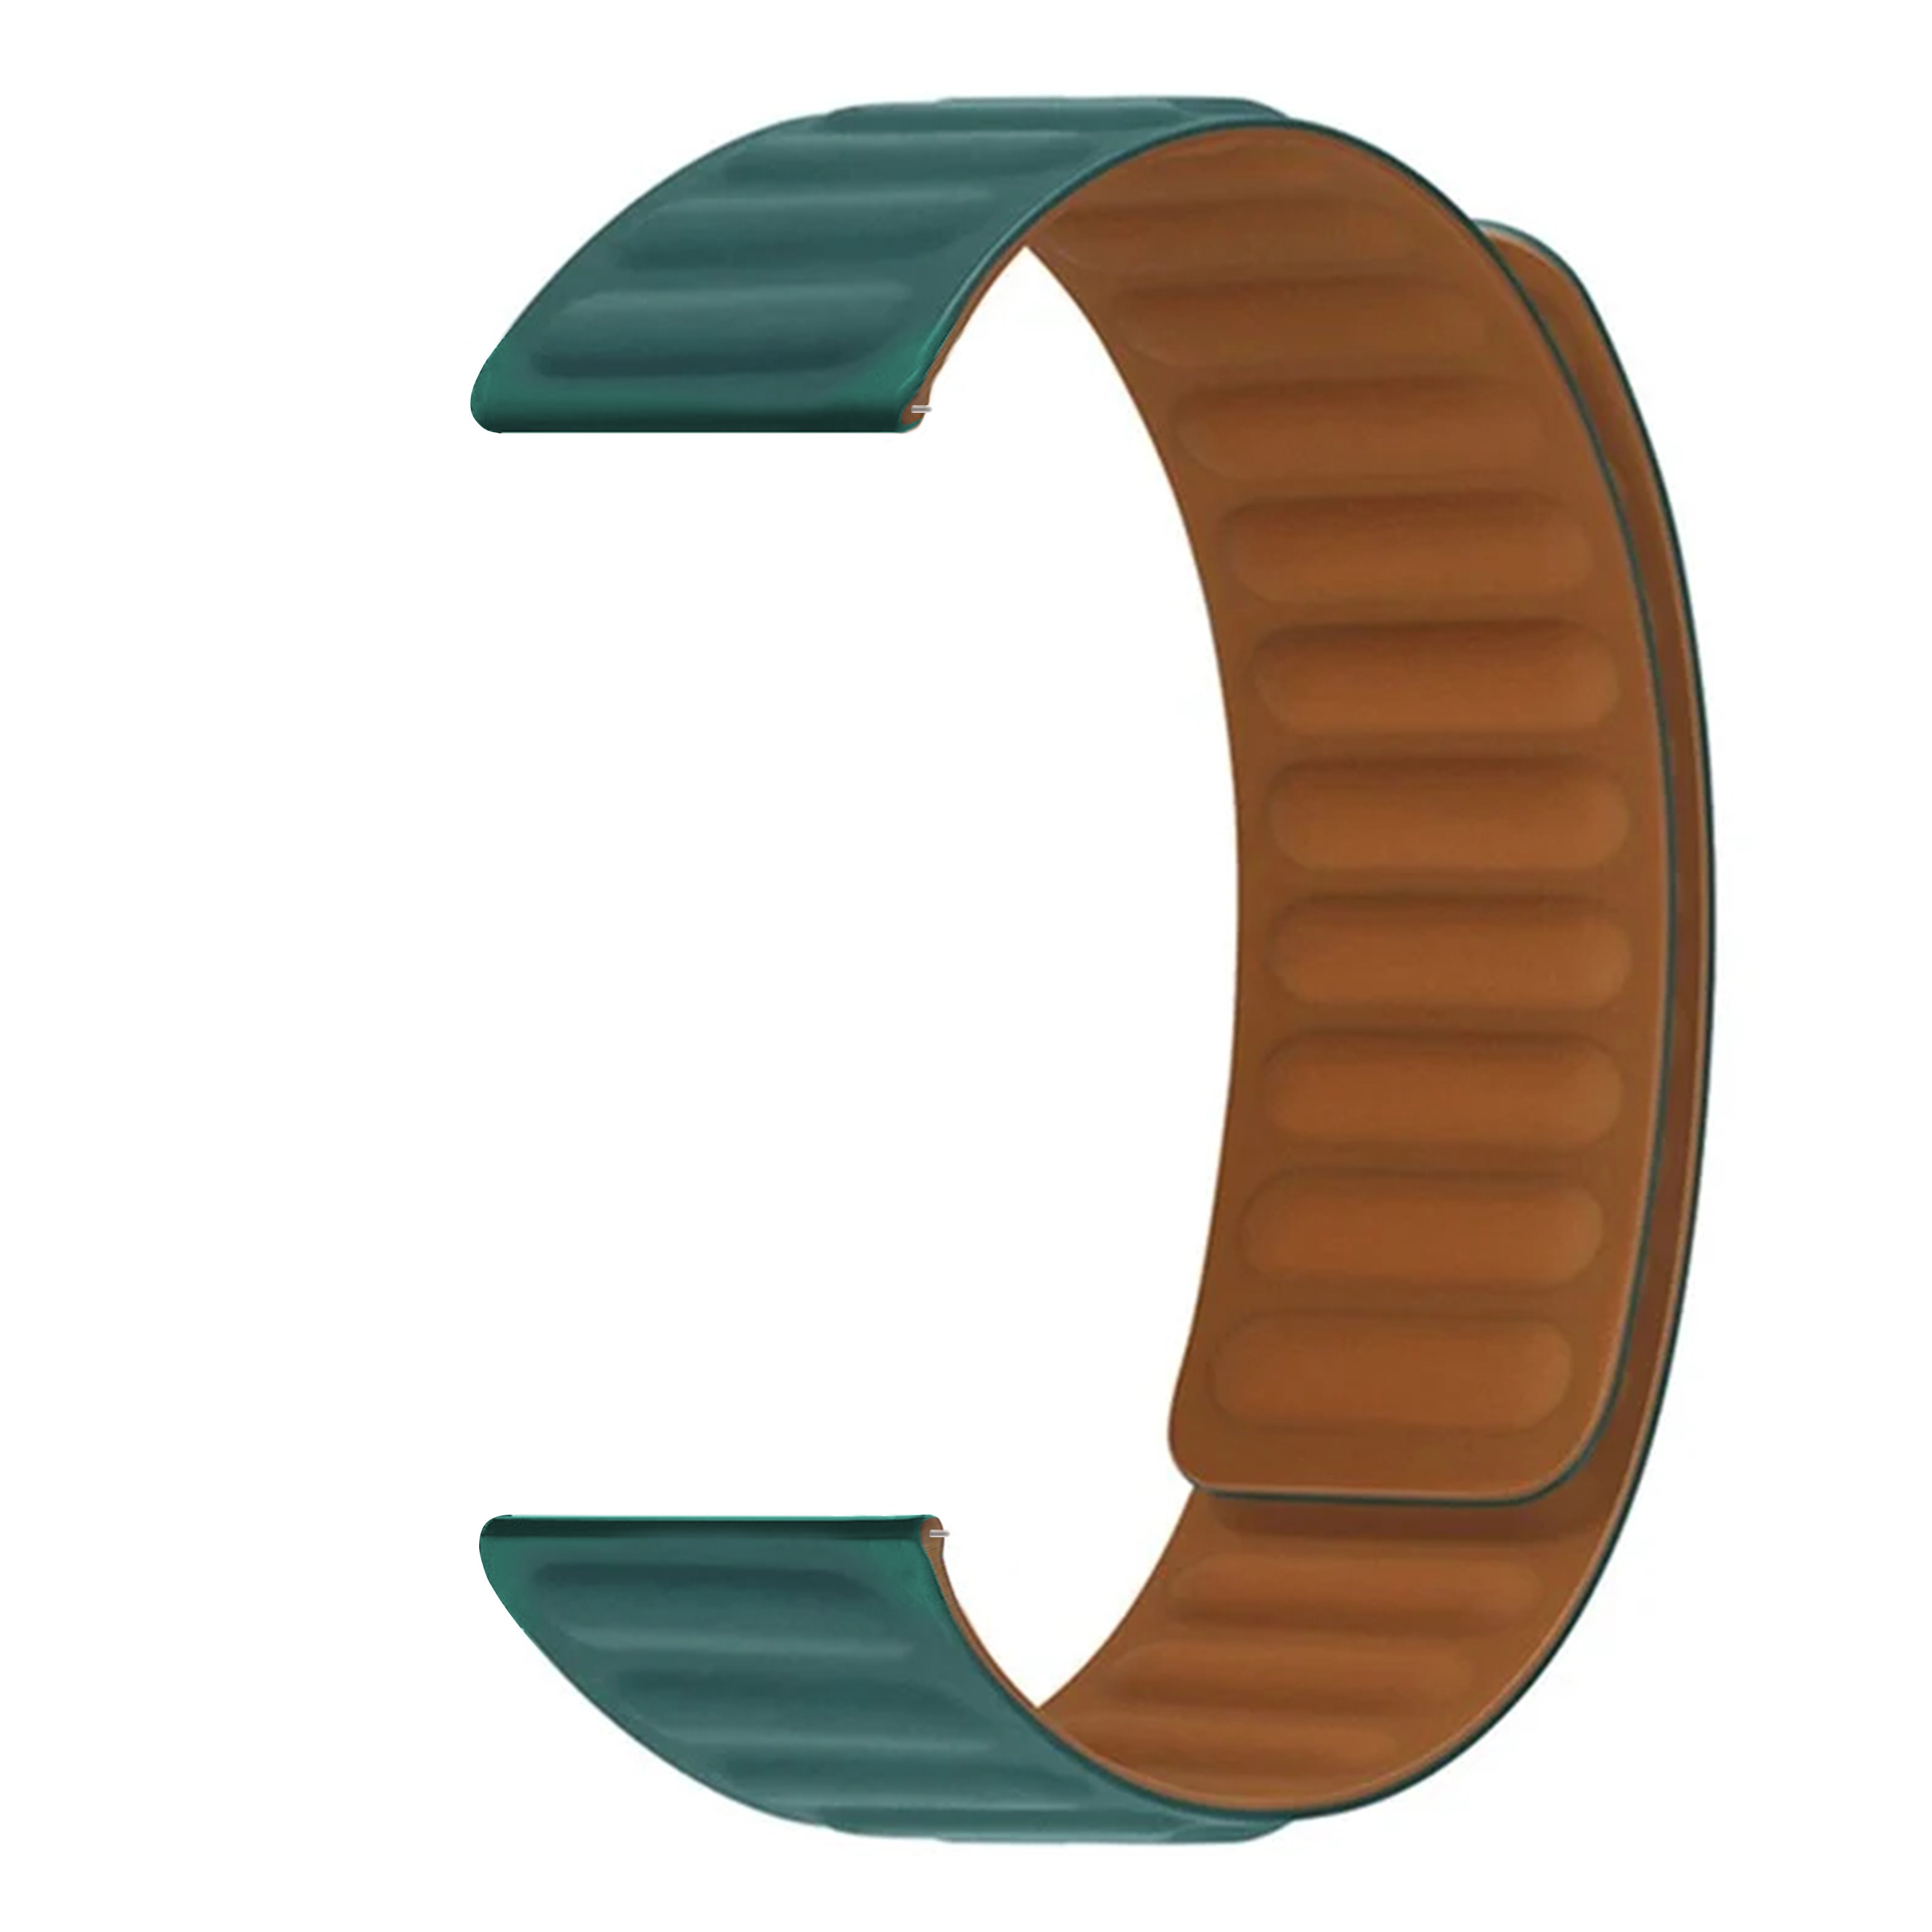 Hama Fit Watch 5910 Magnetische Armband aus Silikon grün